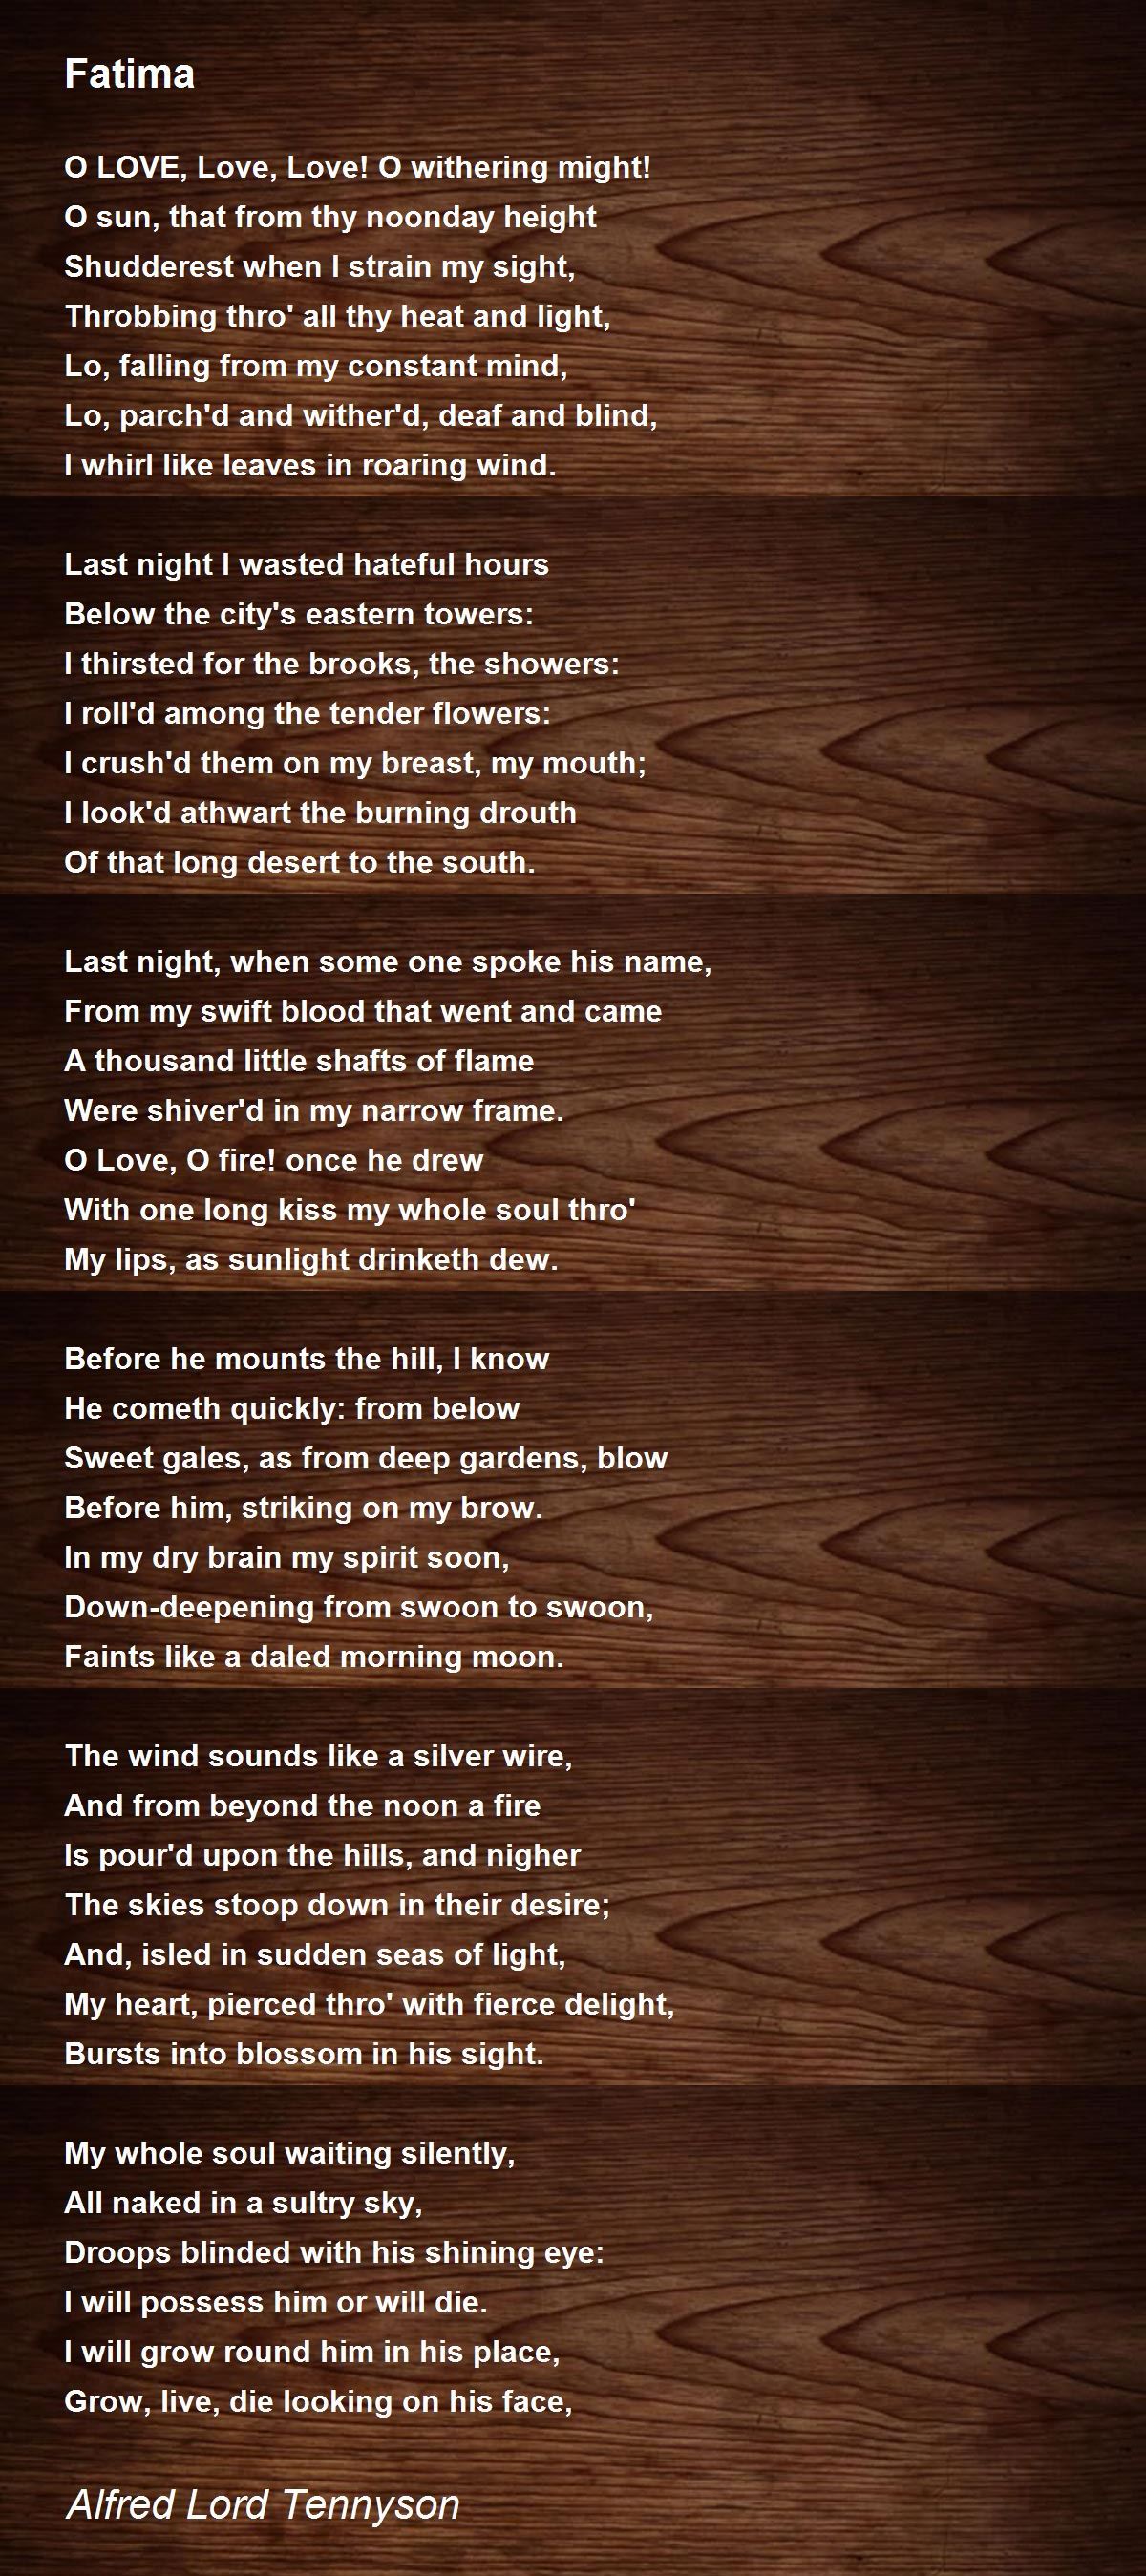 Fatima by Alfred Lord Tennyson - Fatima Poem